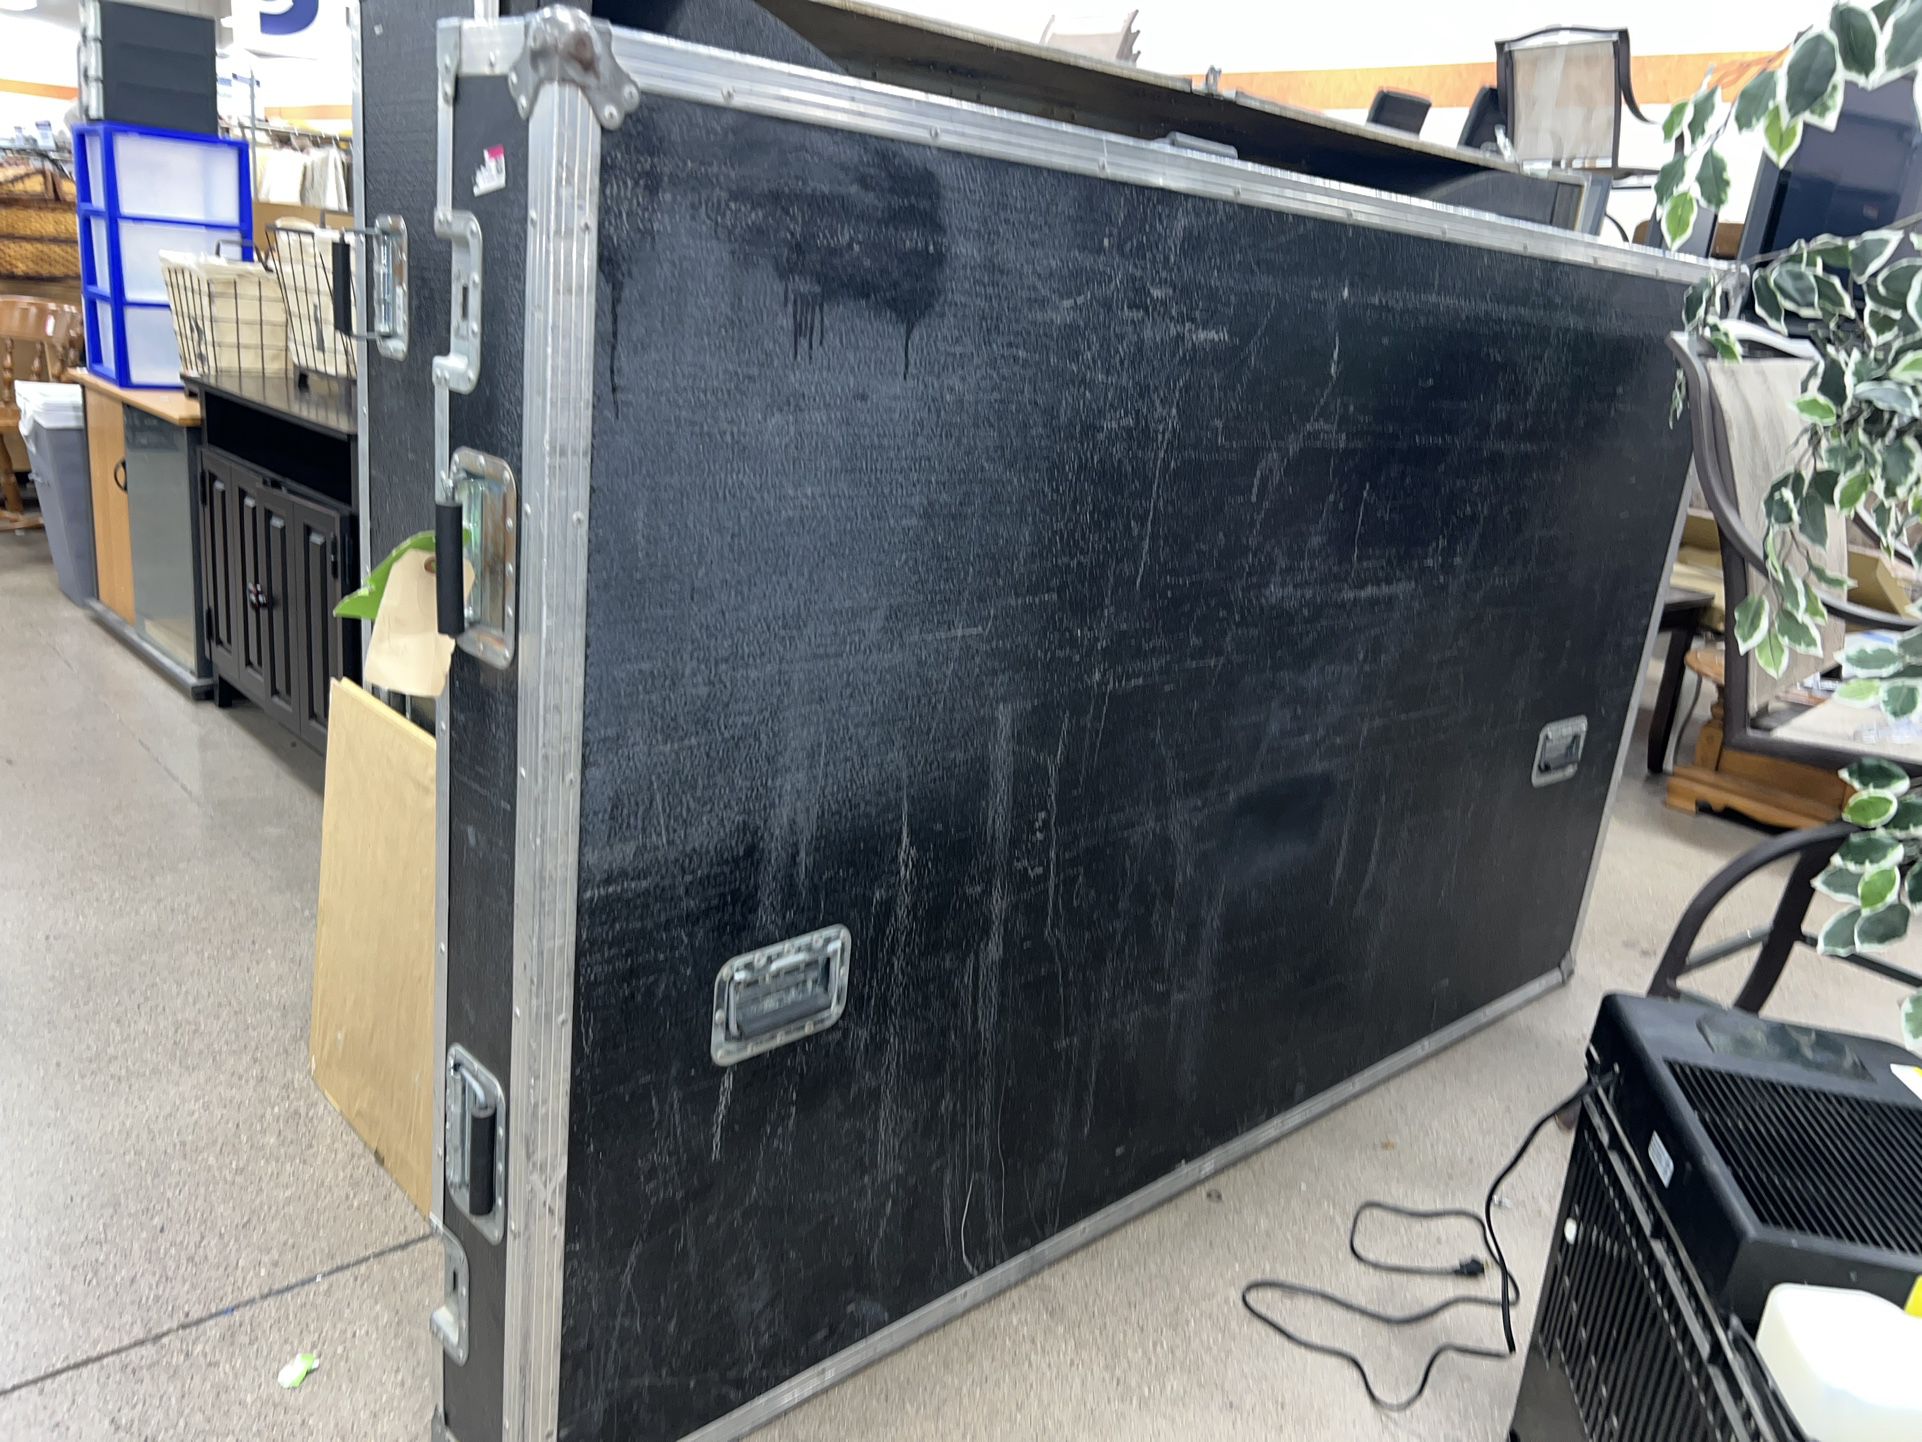 Large Cobra Wheeled Musical Storage Case 23x82x50